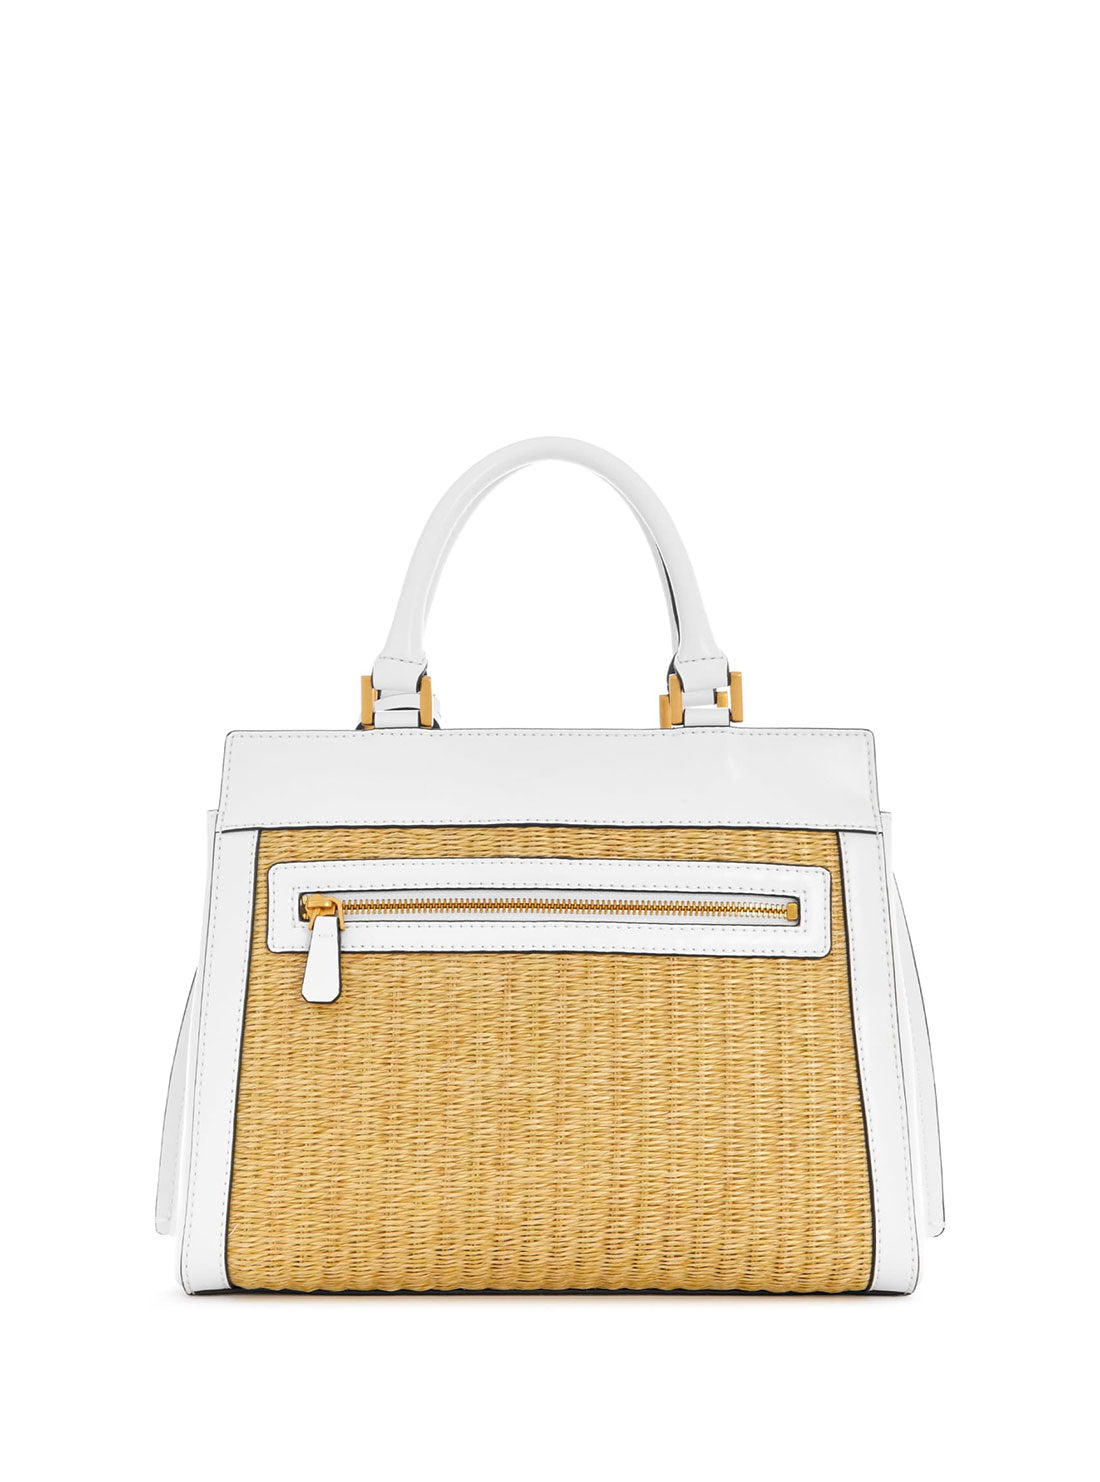 GUESS Women's White Palm Katey Luxury Satchel Bag WA787026 Back View